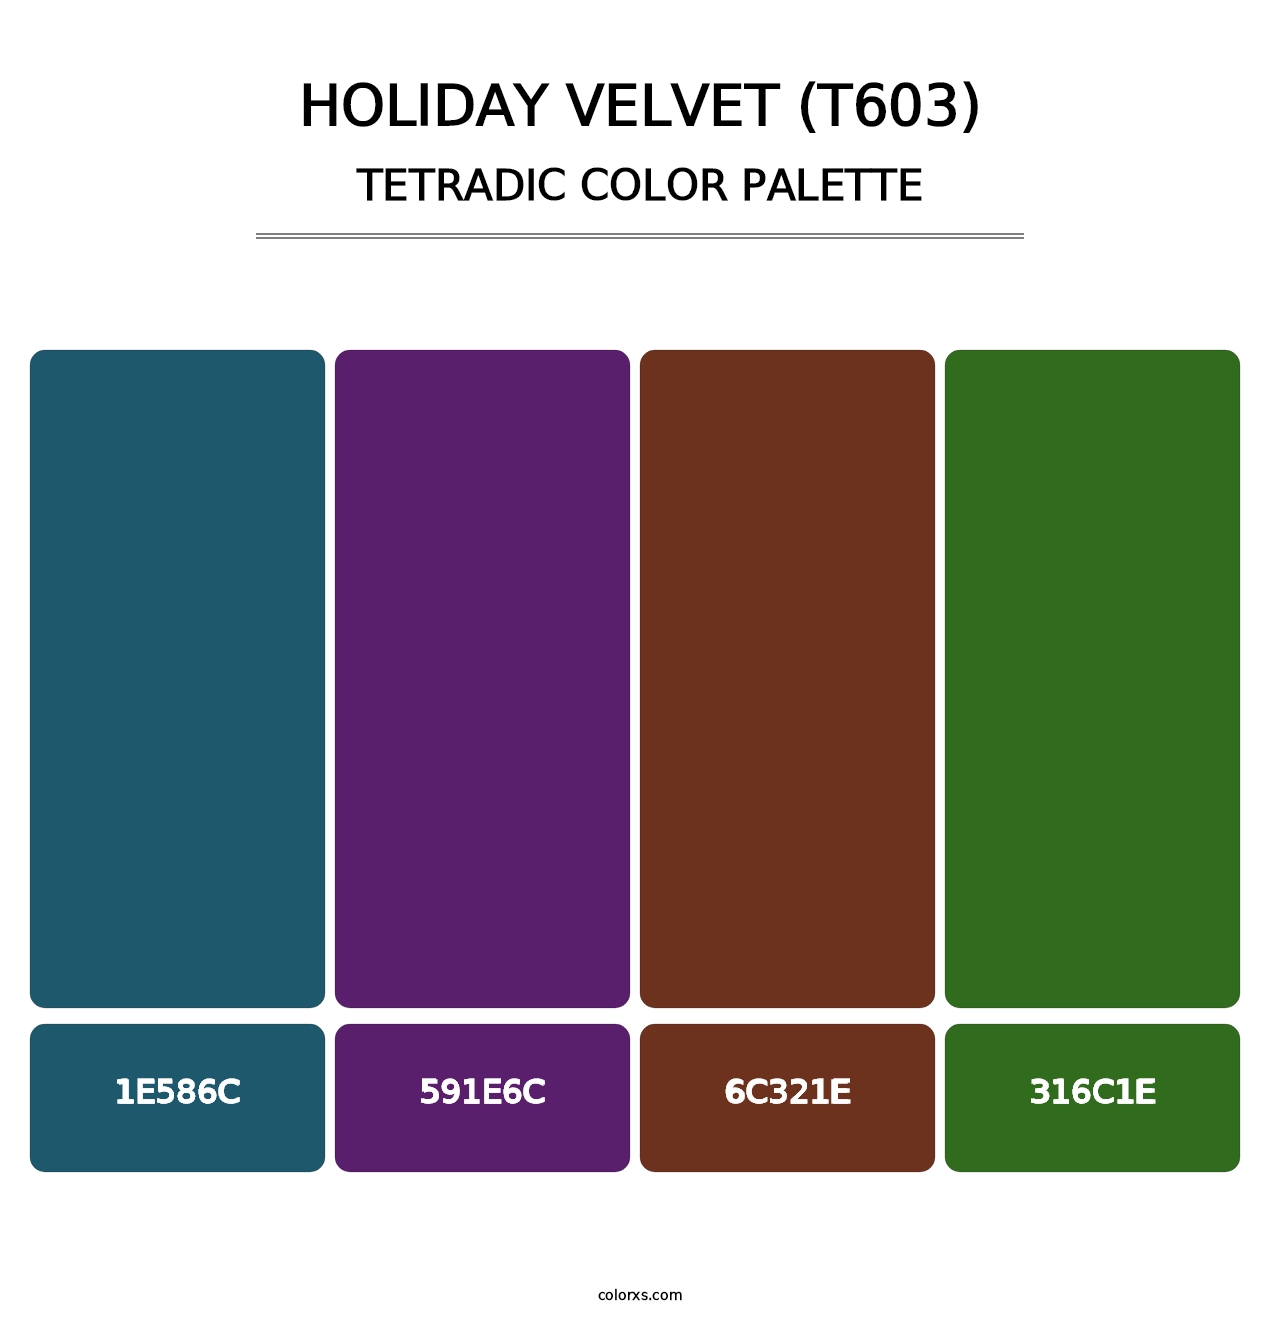 Holiday Velvet (T603) - Tetradic Color Palette